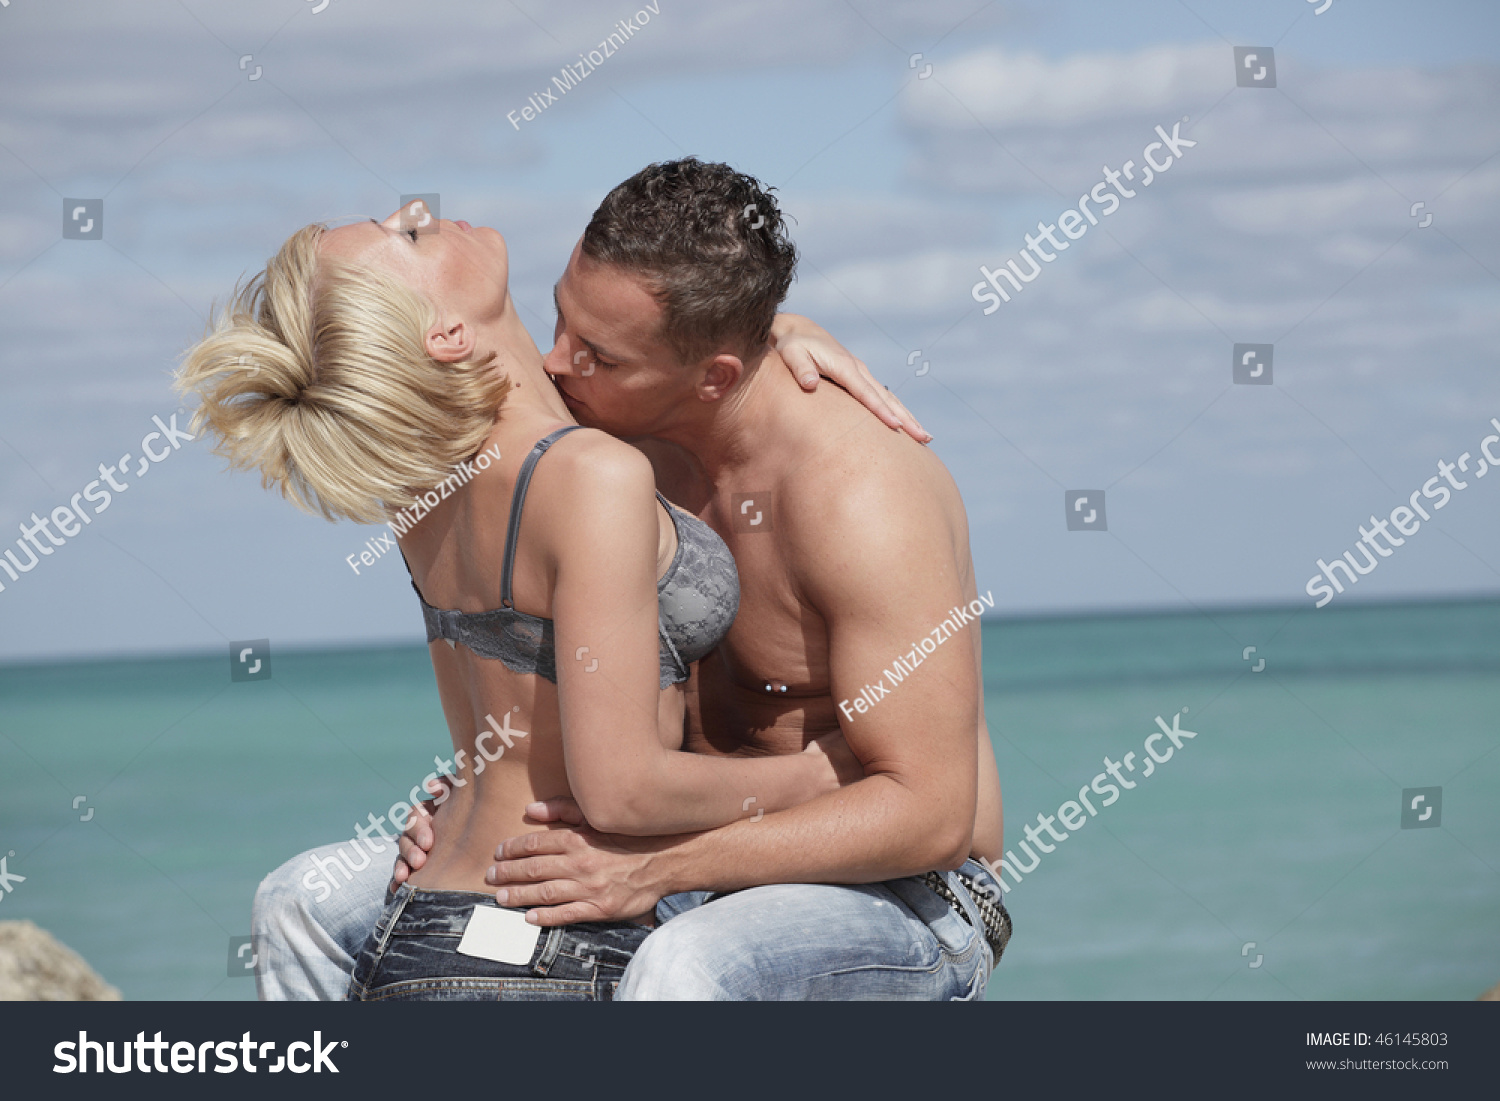 Жаркое солнце и бассейн подтолкнул девушку блондинку с парнем на секс